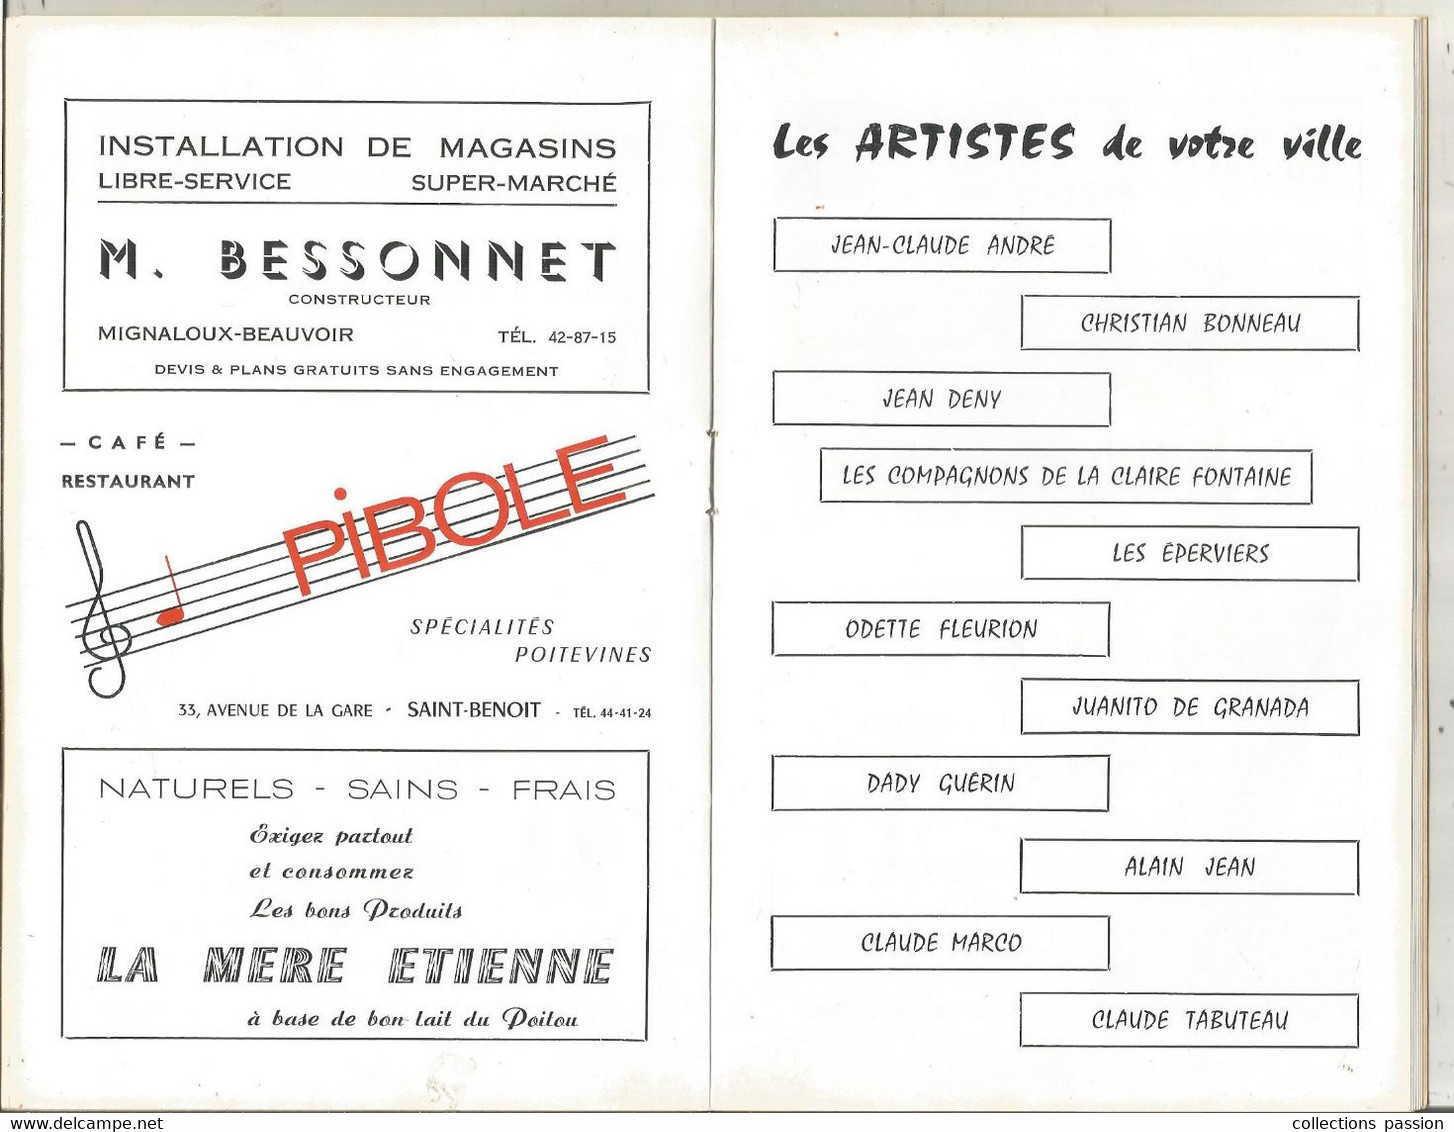 programme, 1947-1967, 20 ans de chansons, théatre de POITIERS ,1968,34 pages, 9 scans, frais fr 4.50 e